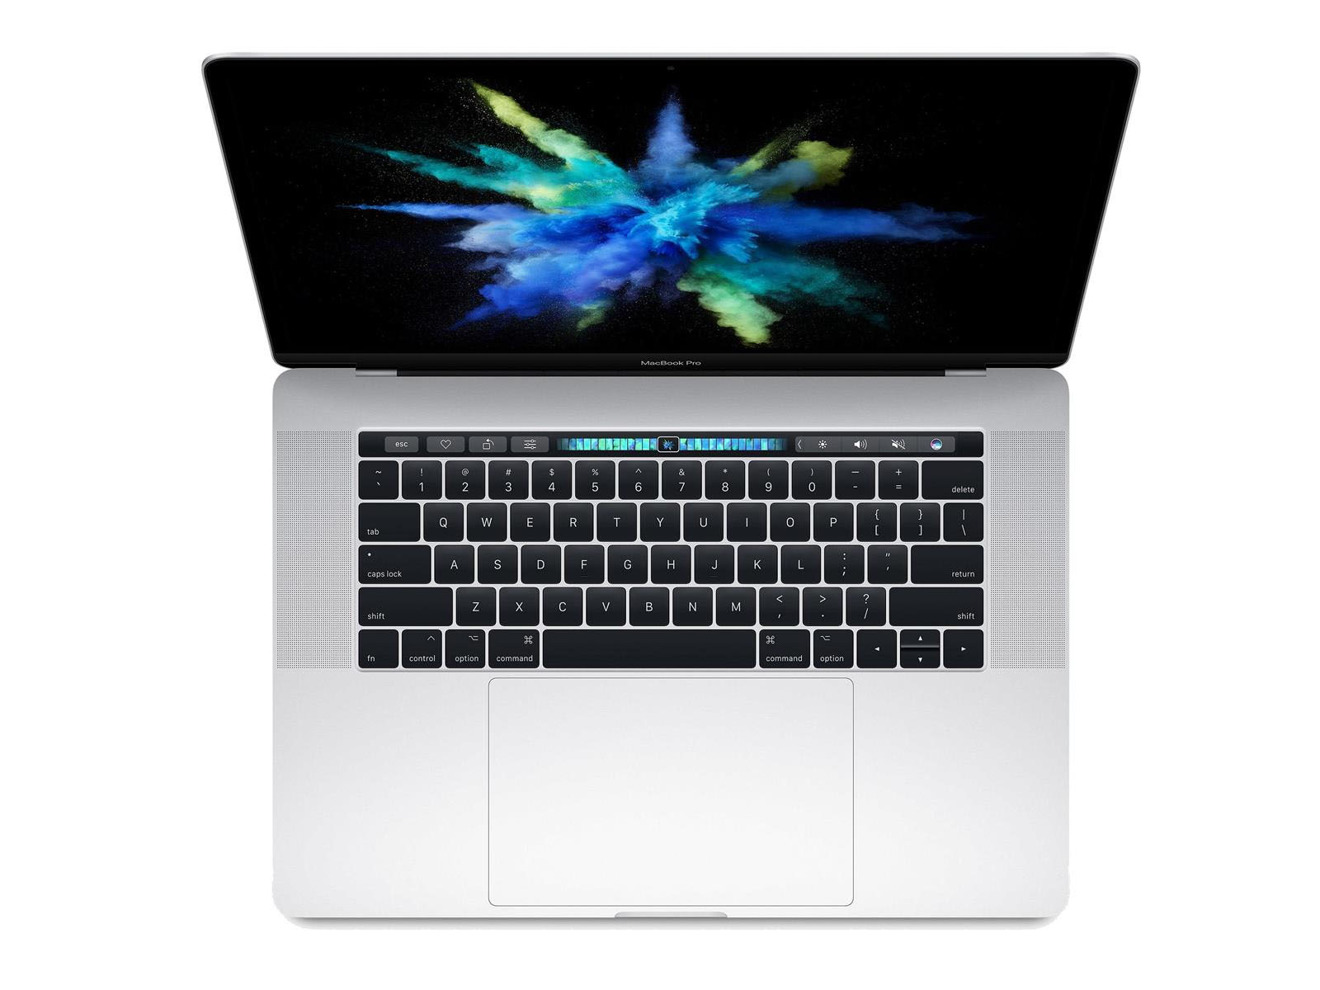 Apple 15 inch MacBook Pro Radeon 460 graphics